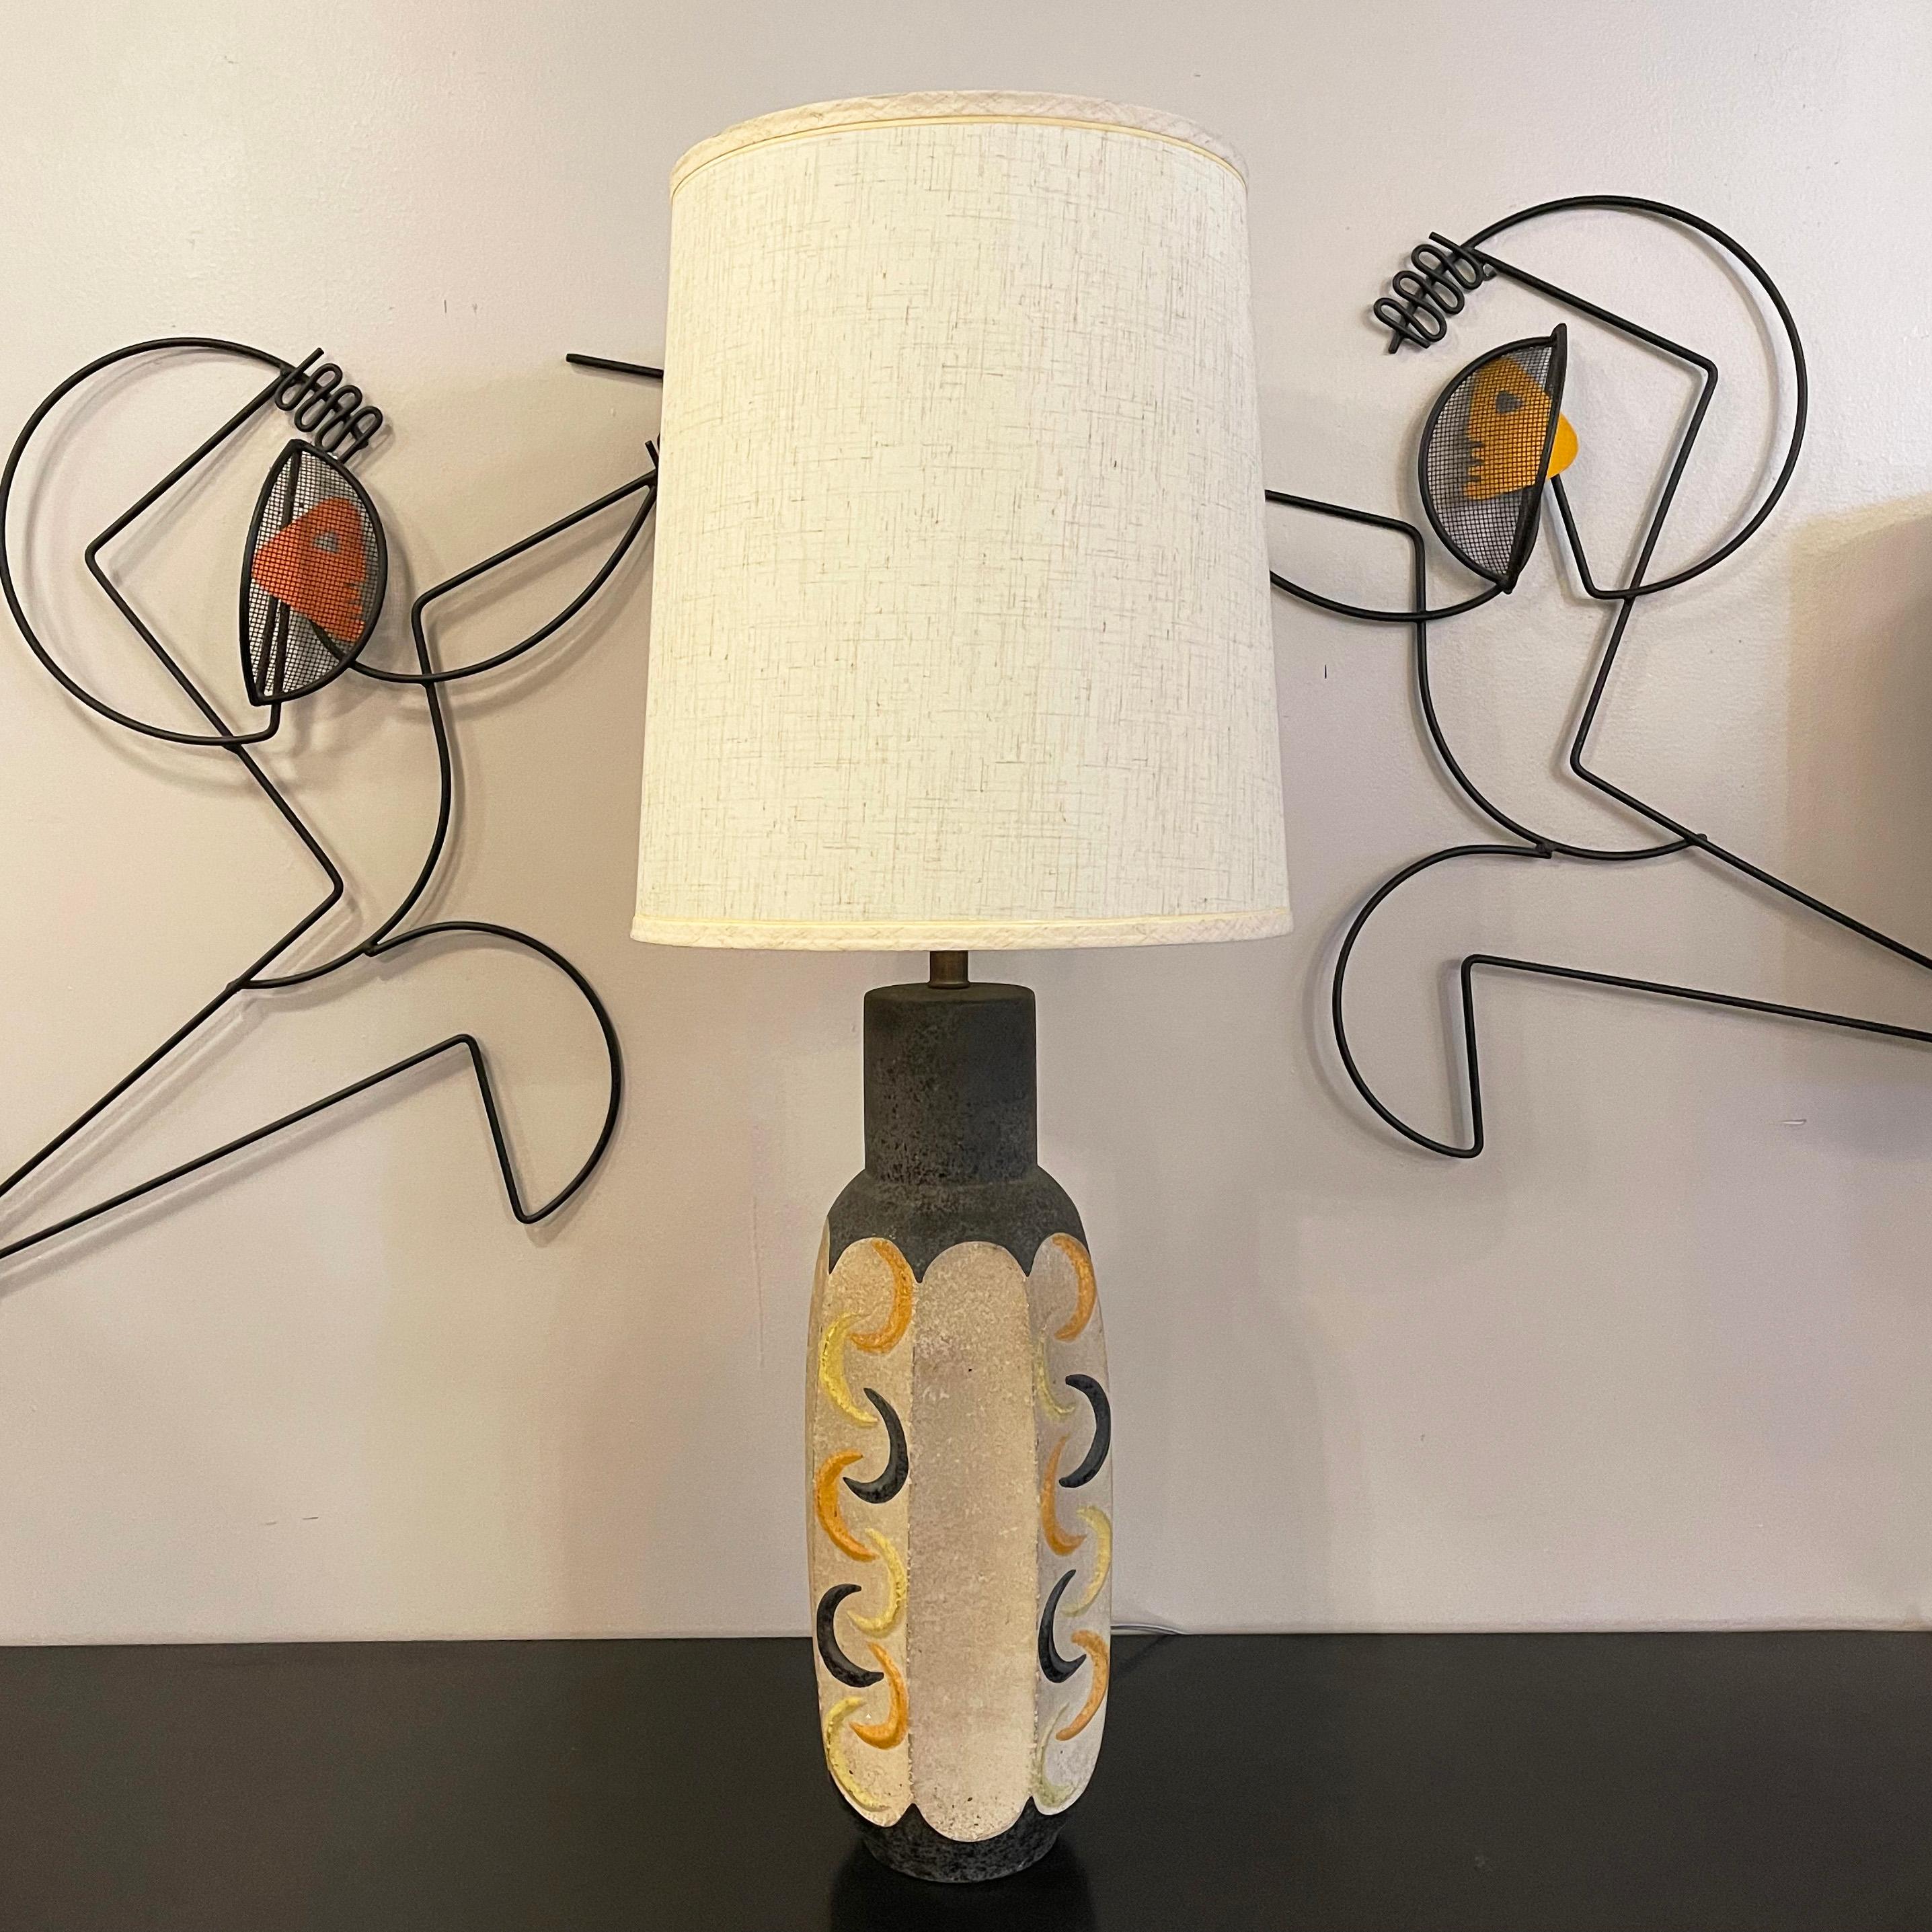 La lampe de table en poterie d'art de Studio, de style moderne du milieu du siècle dernier, par Tye Of California, présente un corps à facettes avec des formes de croissant jaunes, orange et grises sur un fond crème. La hauteur du corps en céramique